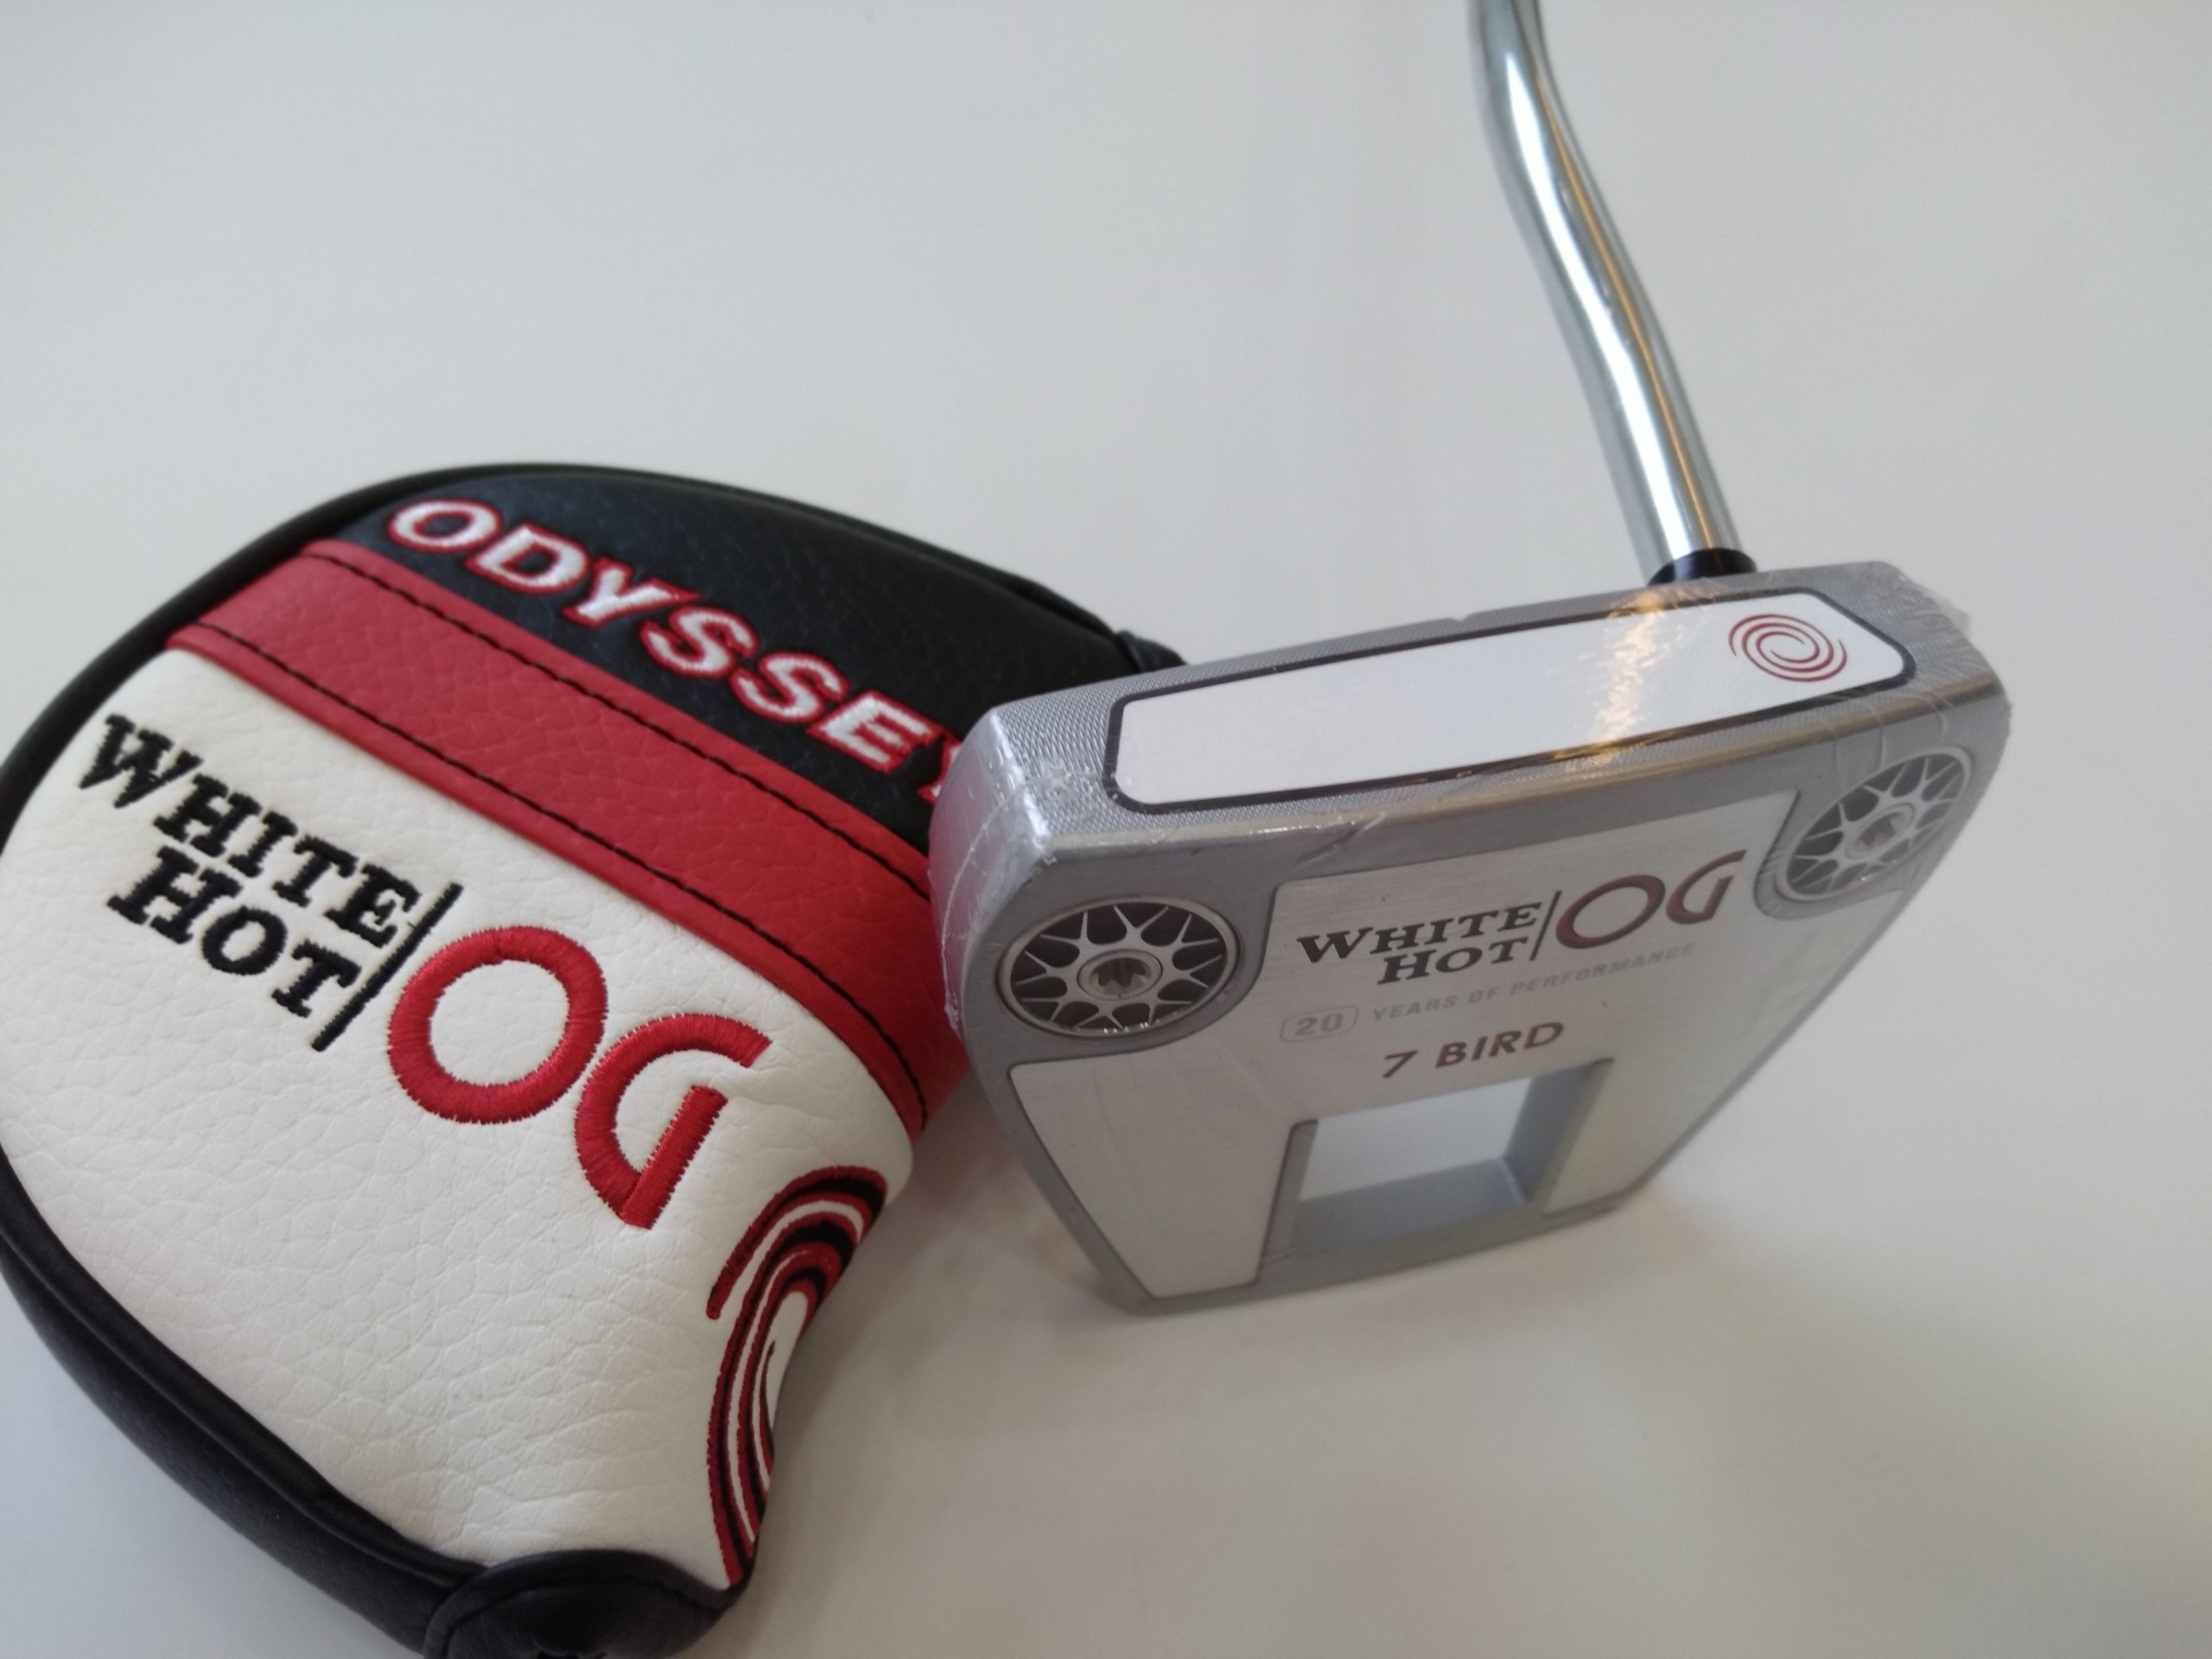 (Chính Hãng) Gậy Putter Odyssey White Hot OG 7 Bird 33 Inch Và 34 Inch - Gậy Golf New Seal